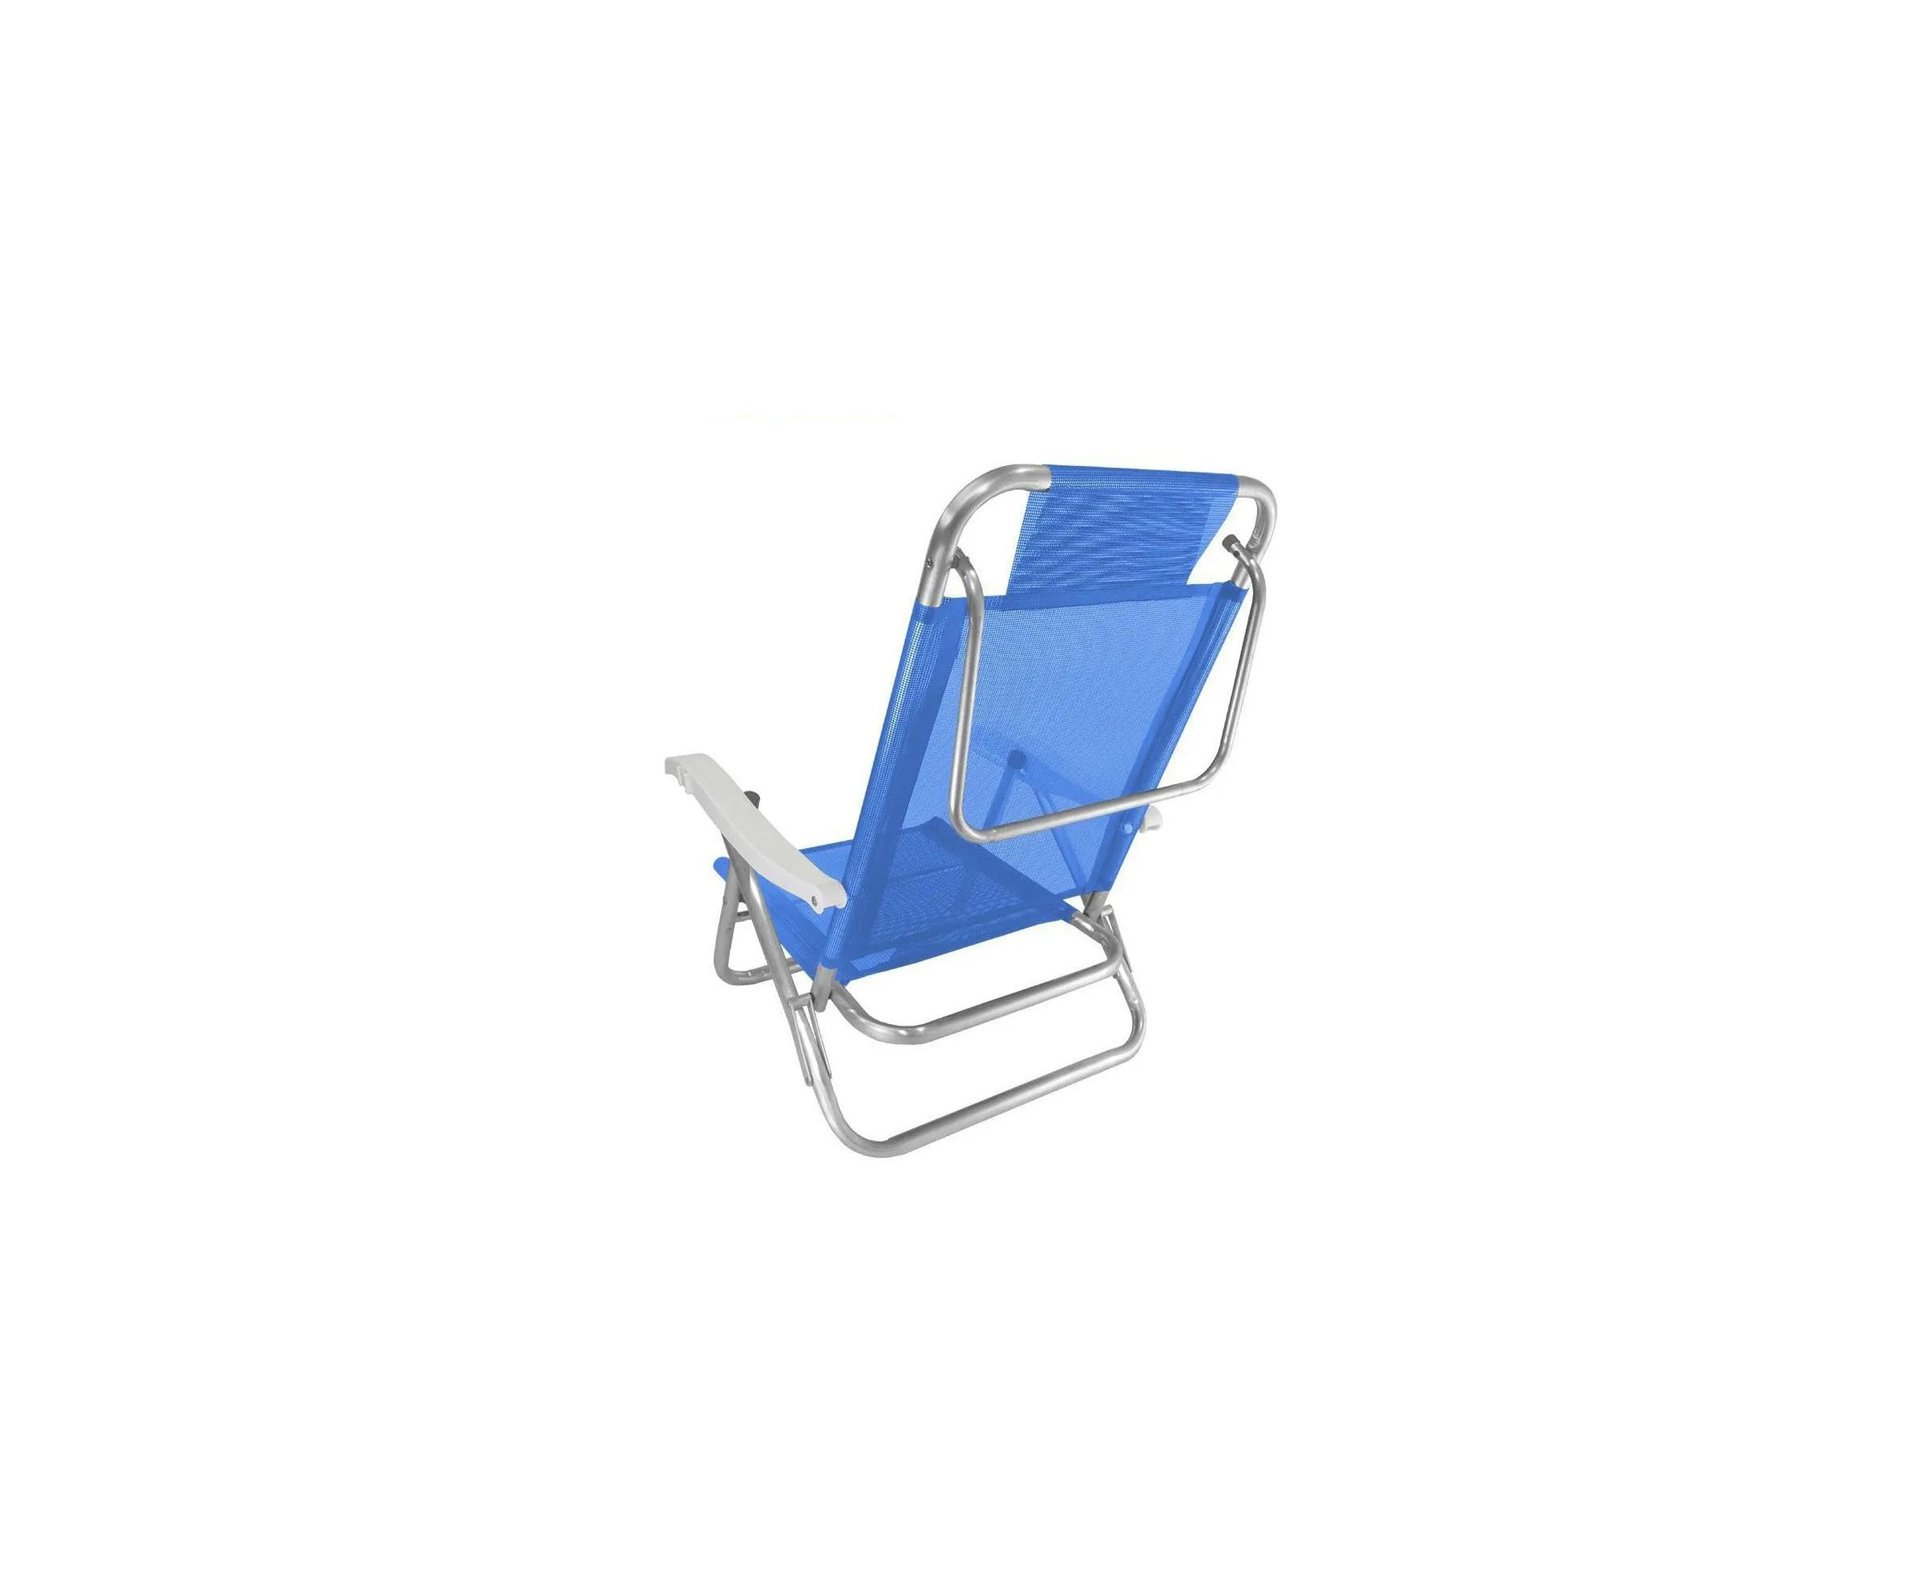 Cadeira Praia Em Aluminio Banho De Sol Azul Cap 120kg - Zaka